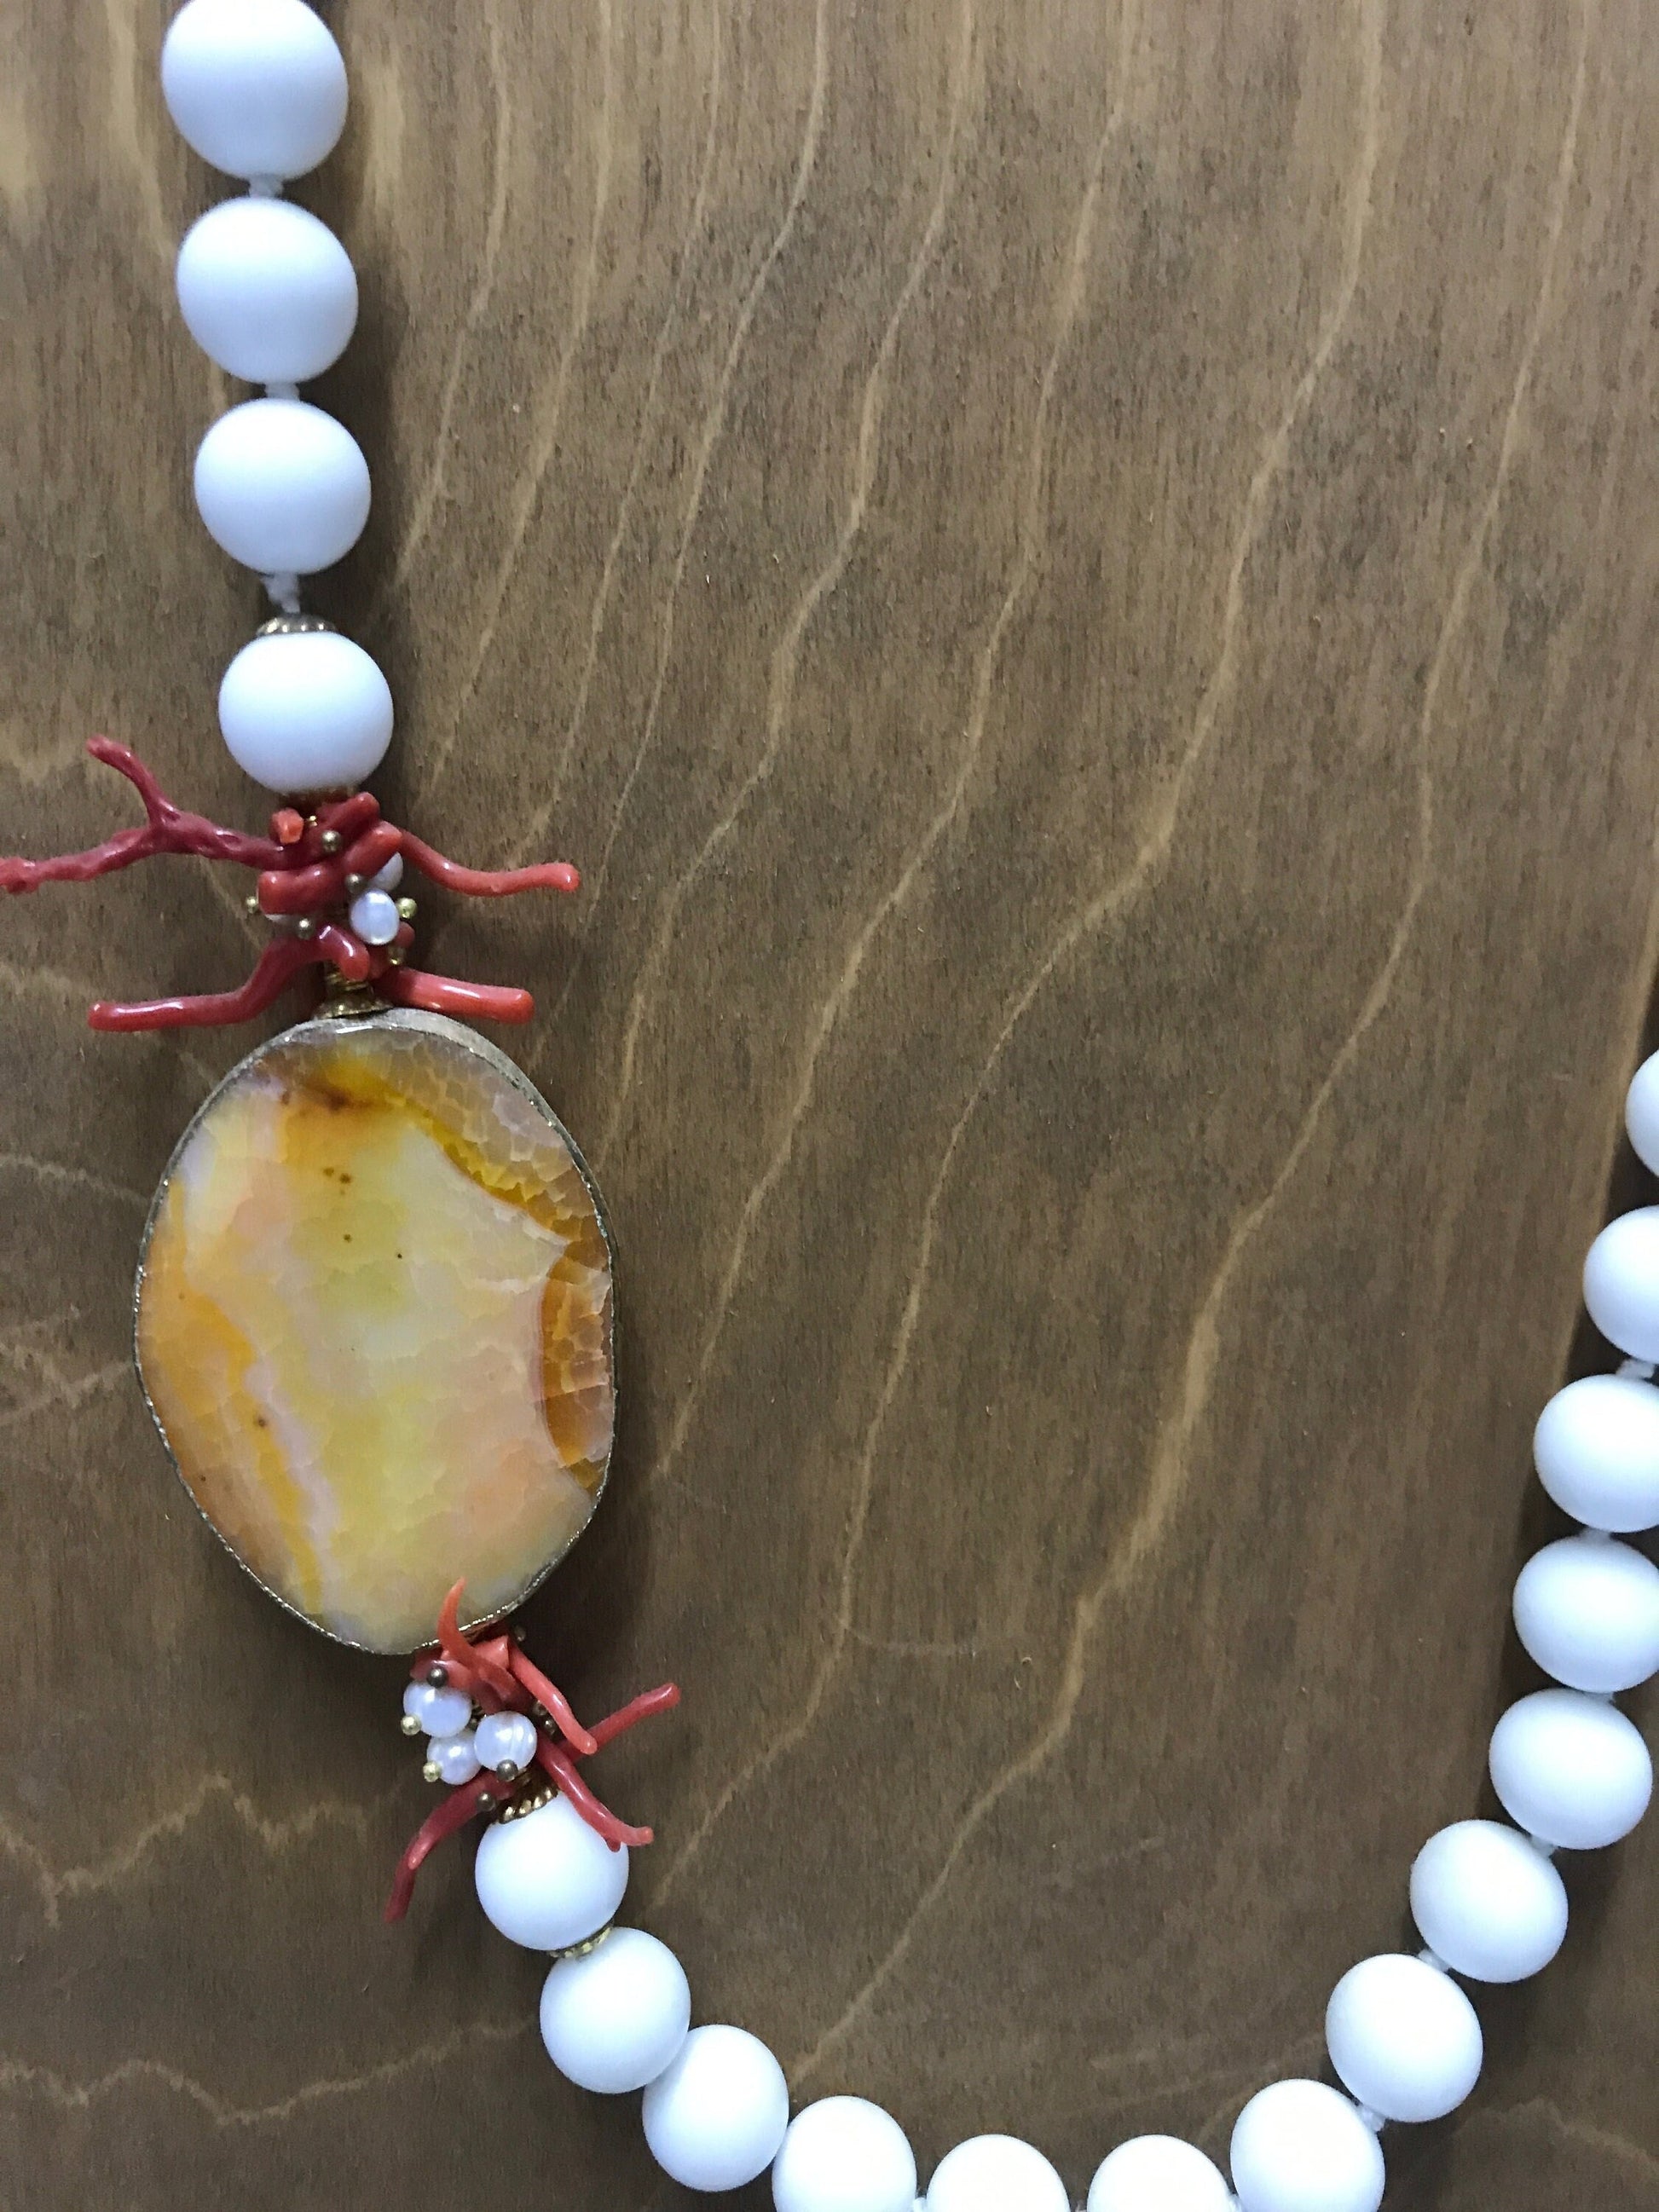 Collana siciliana con filo di perle in agata bianca, medaglione in agata arancione e rami di corallo&